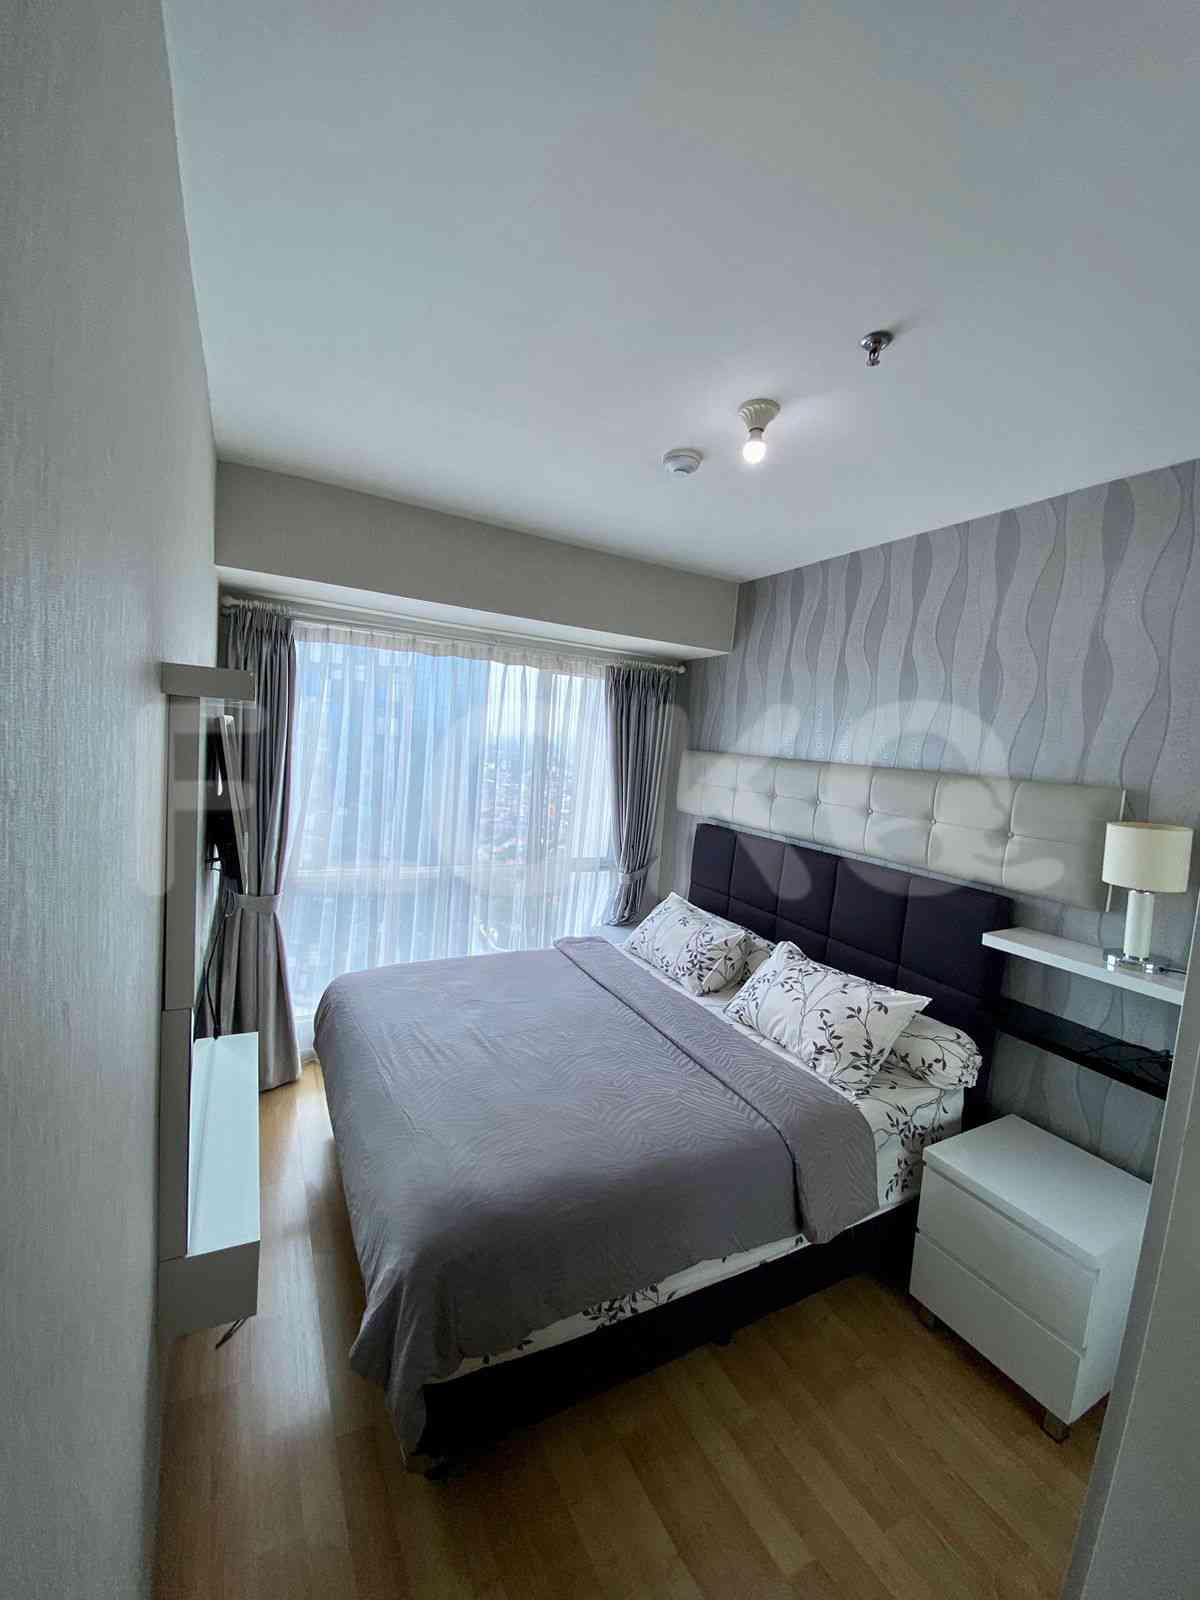 2 Bedroom on 20th Floor for Rent in Casa Grande - fte53b 3